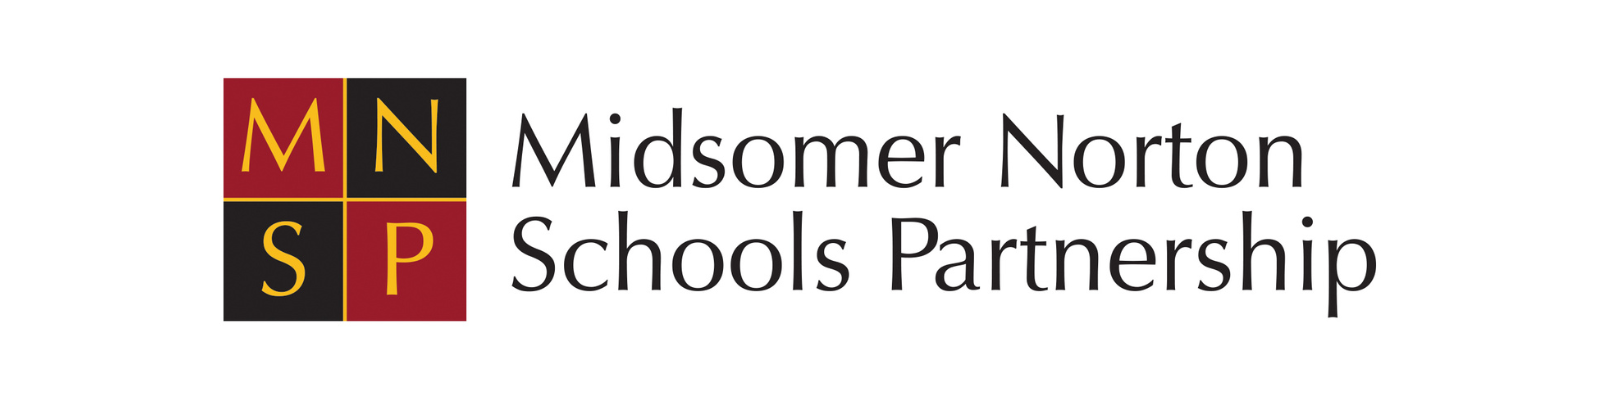 Midsomer Norton Schools Partnership